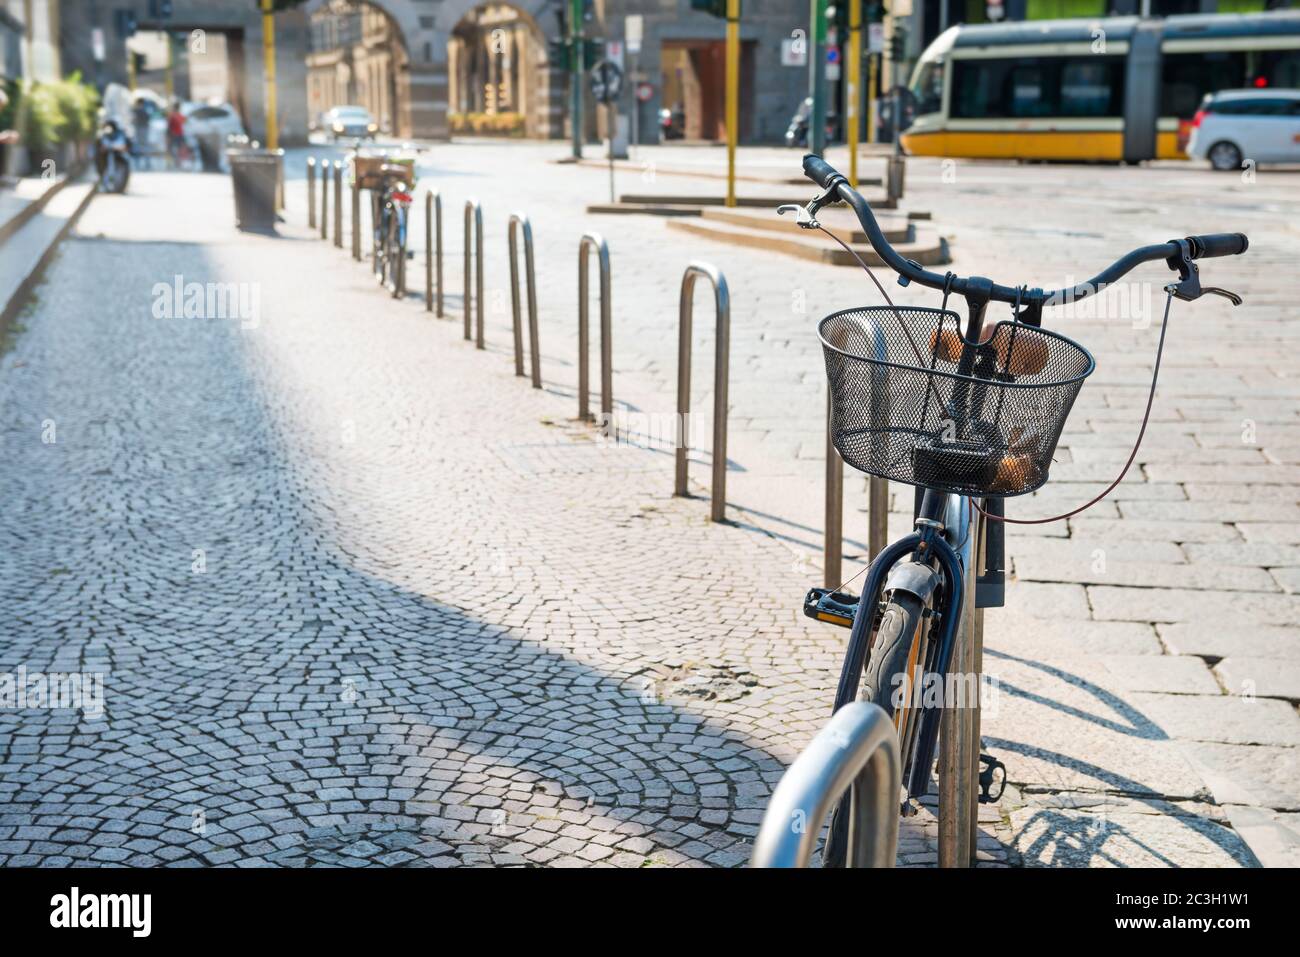 Bicicleta estacionada en las calles de la ciudad Foto de stock